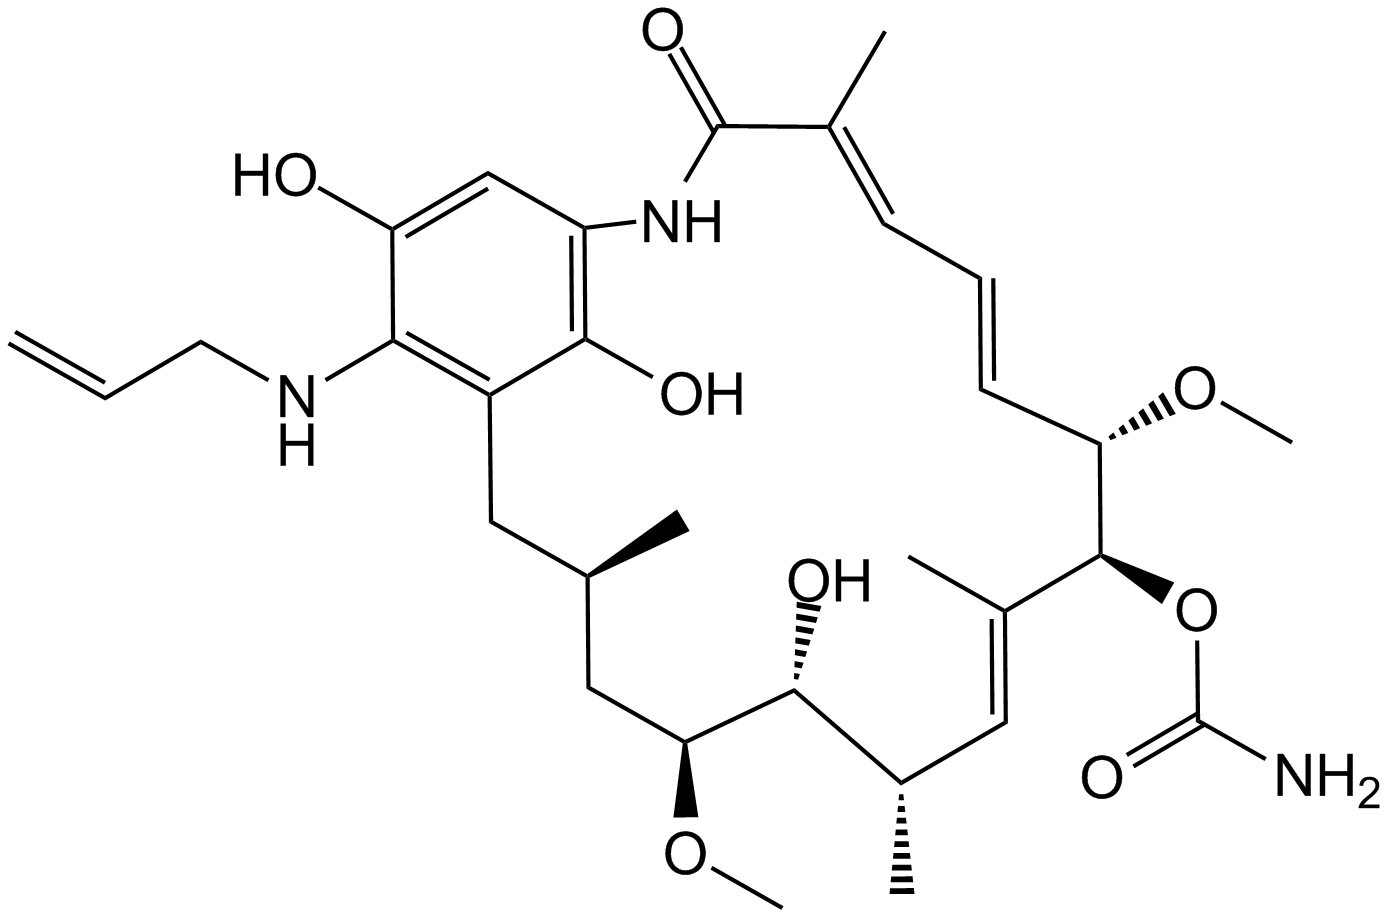 Retaspimycin  Chemical Structure